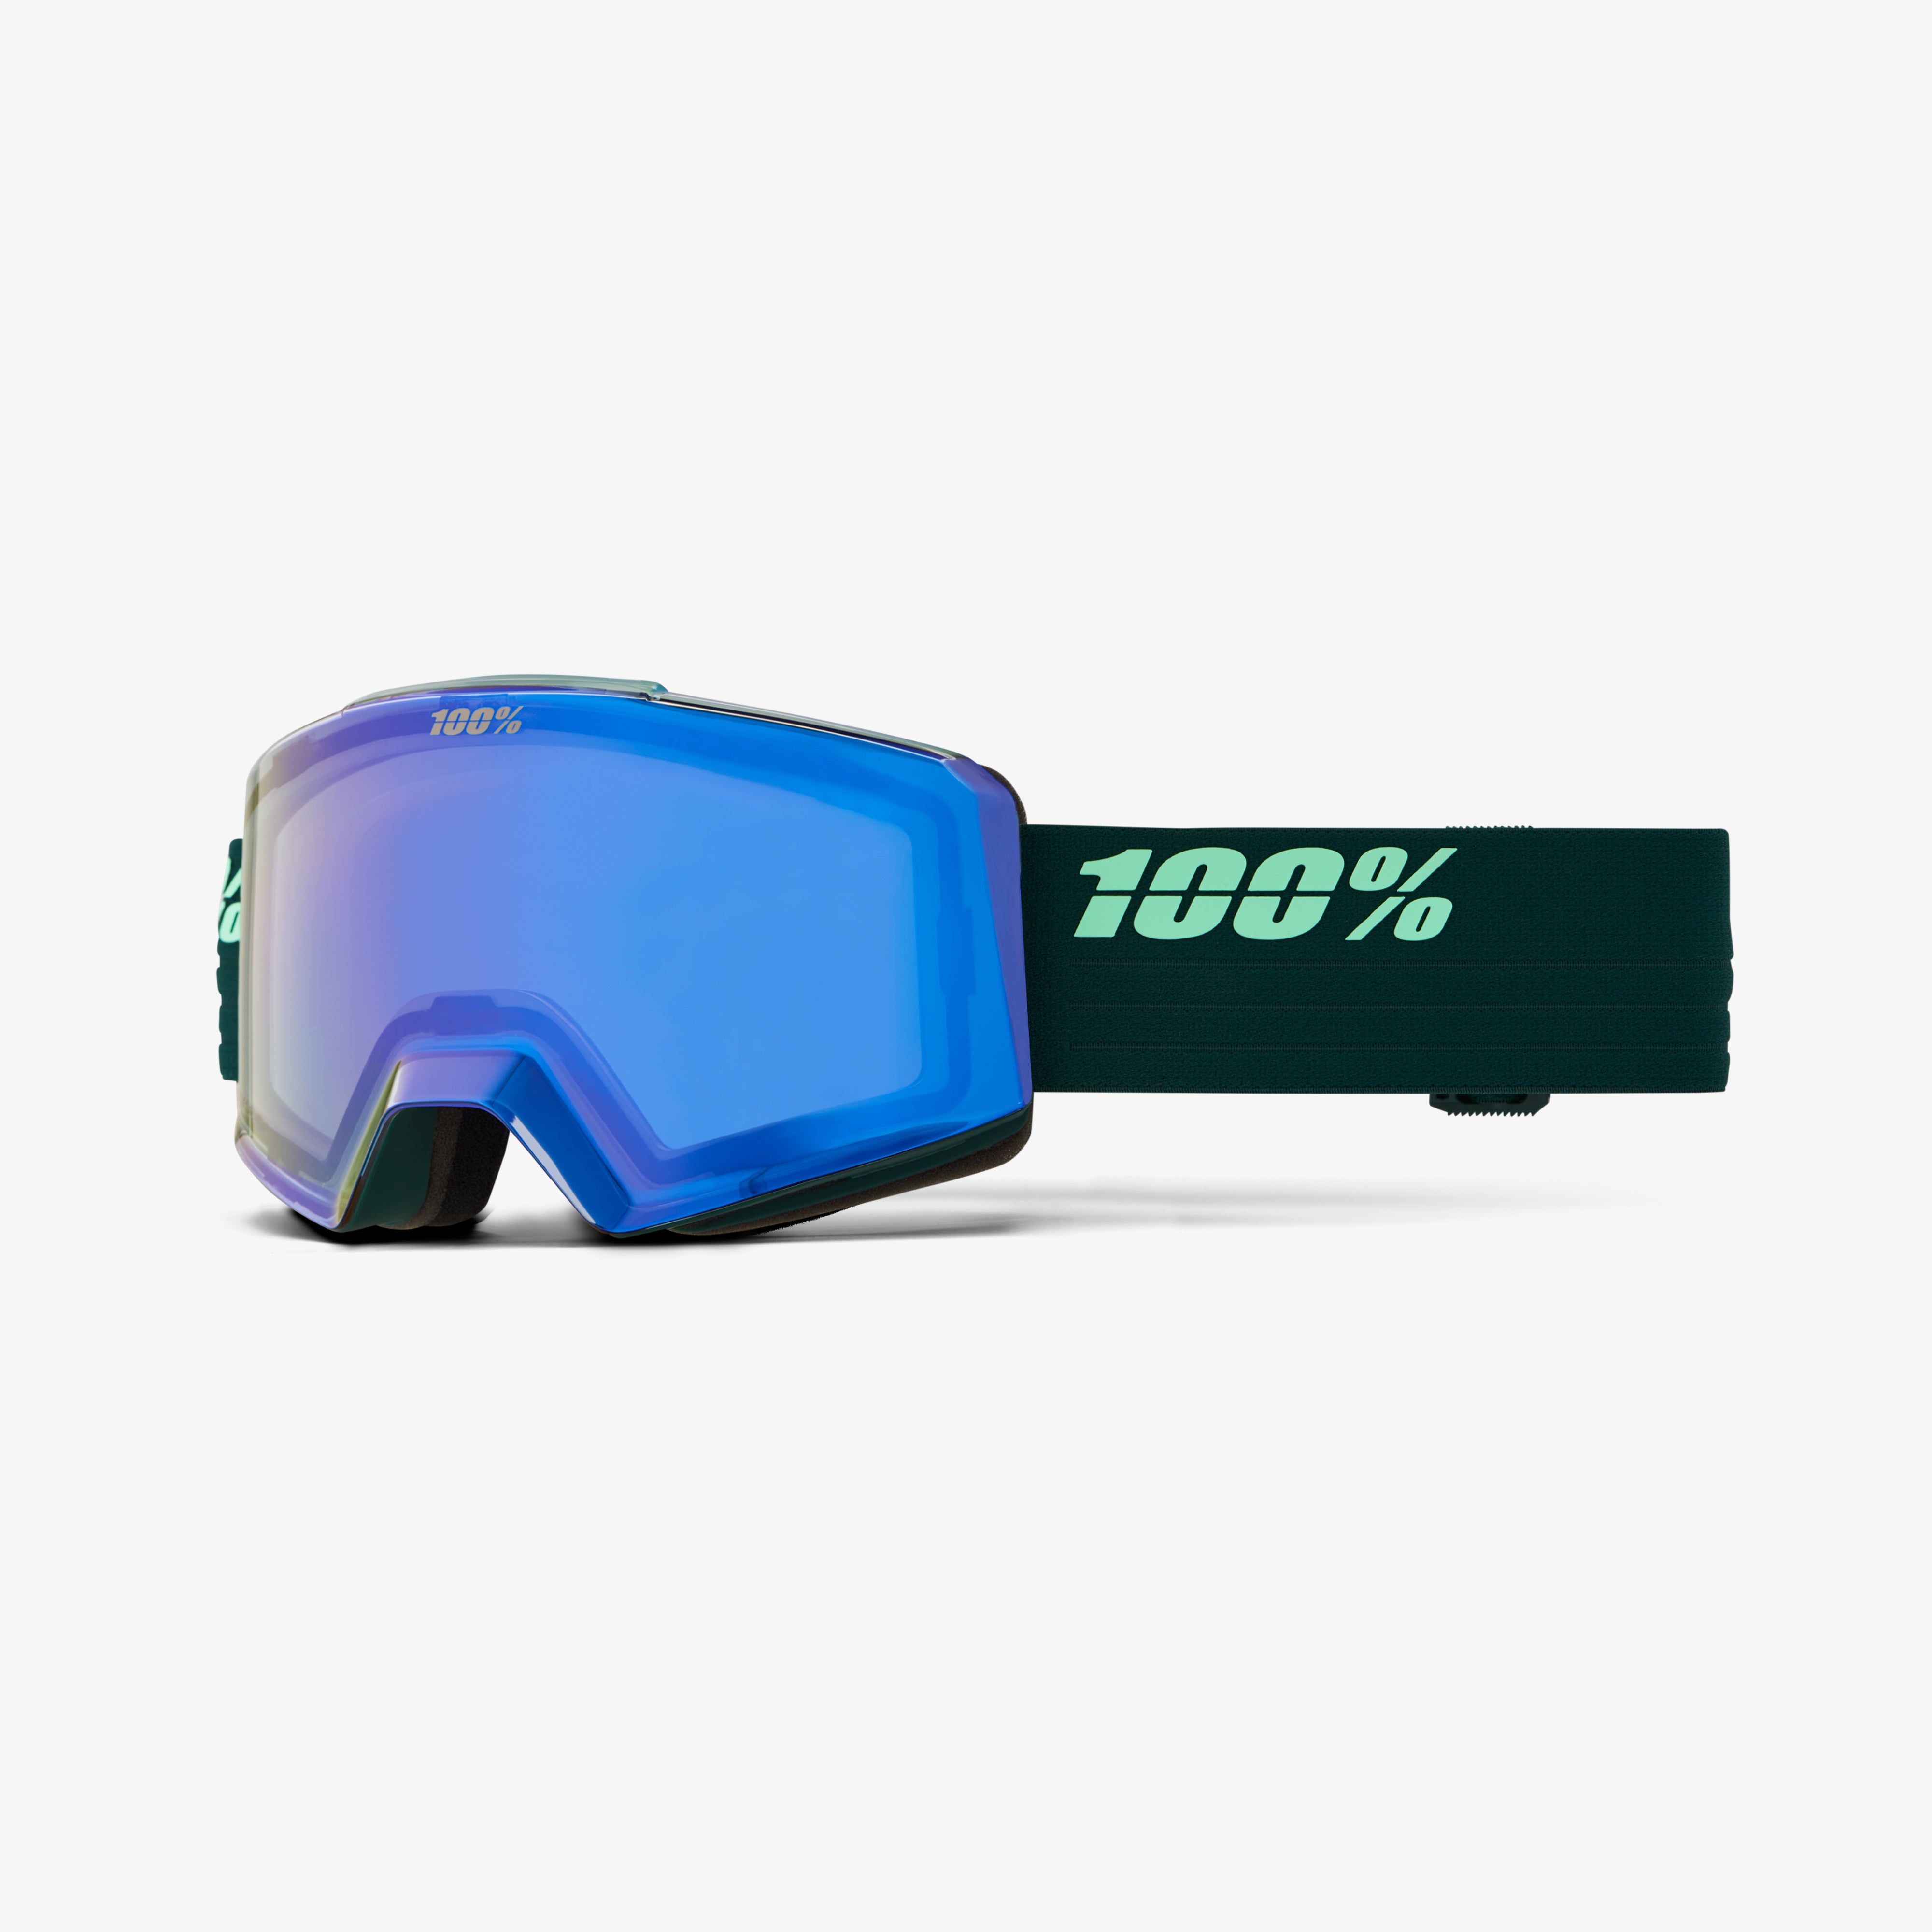 NORG AF HiPER Goggle Chameleon - Mirror Green Lens